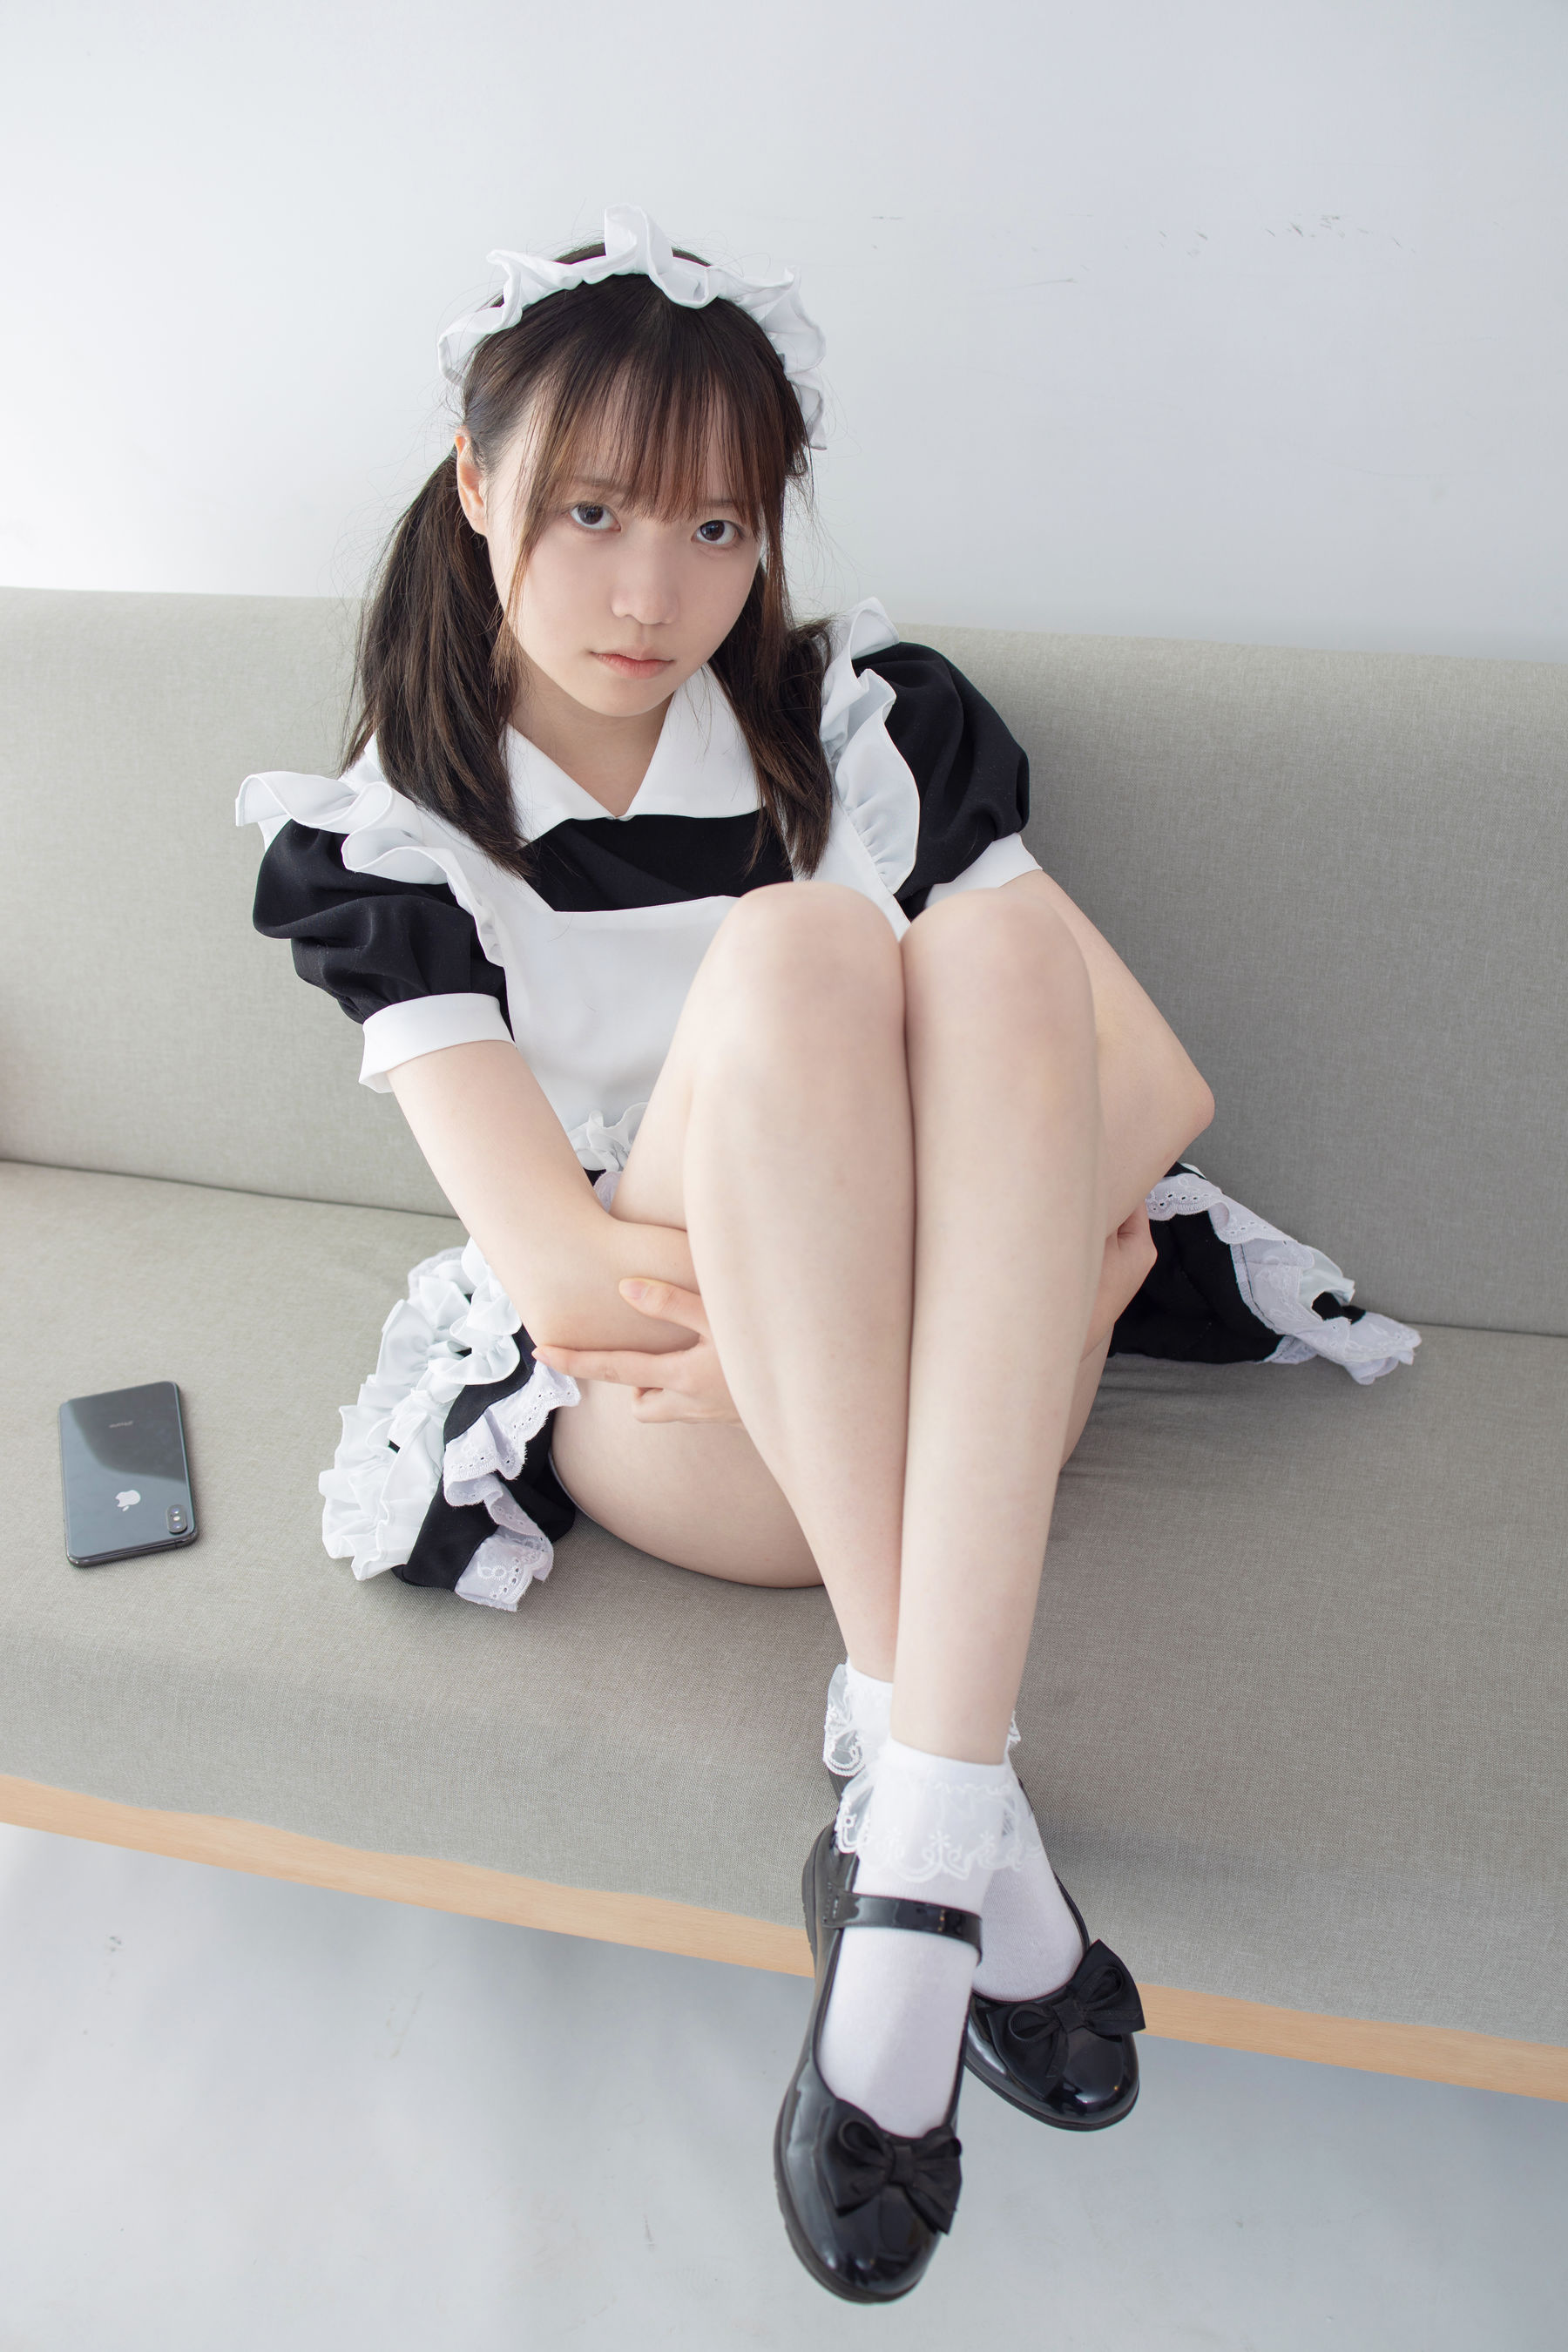 [森萝财团] JKFUN-053 Aika 蕾丝花边短袜女仆